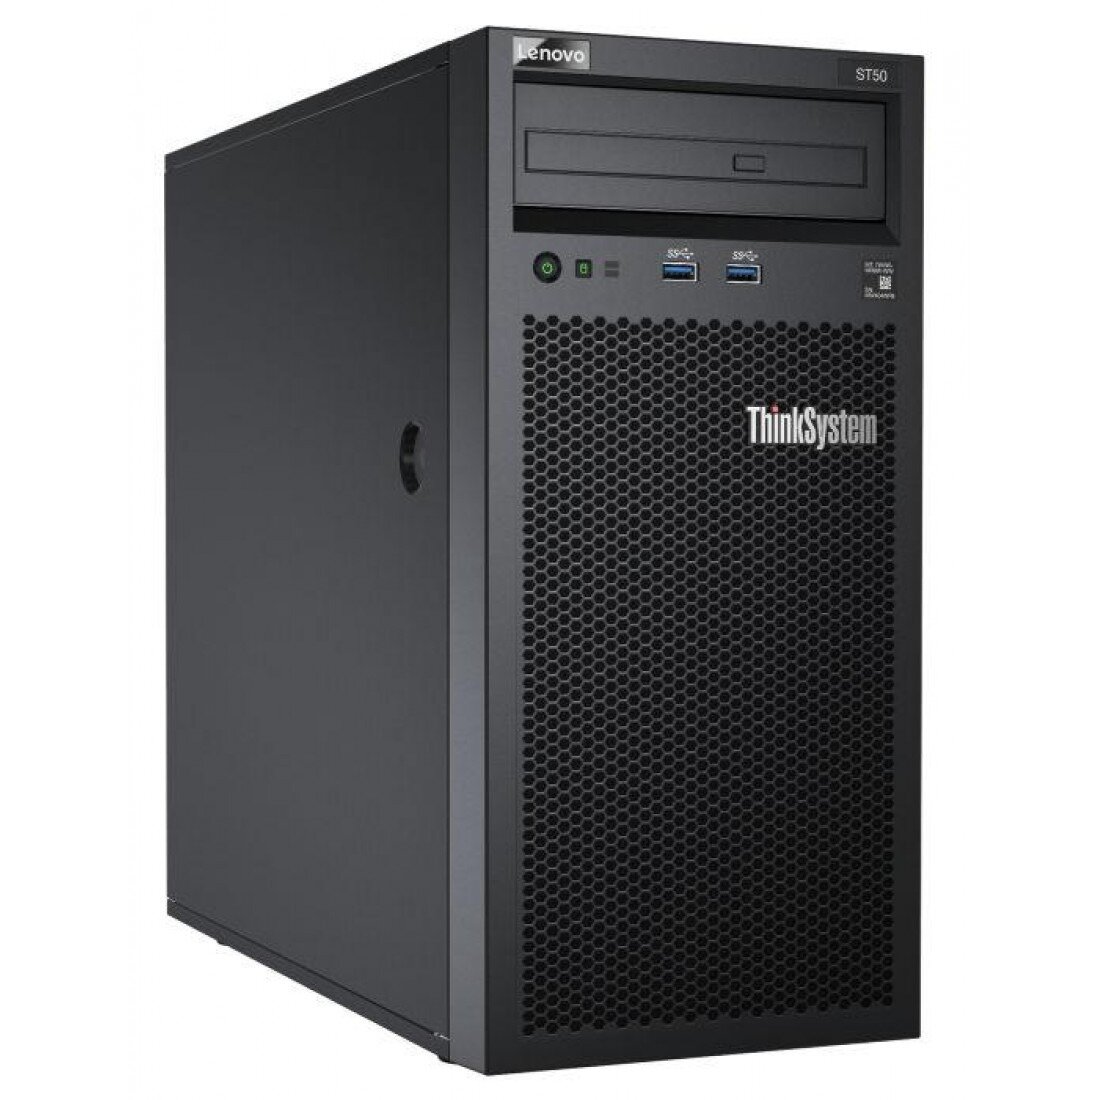 Lenovo ThinkSystem ST50 Server (E-2200) - 8GB RAM / 1TB HDD